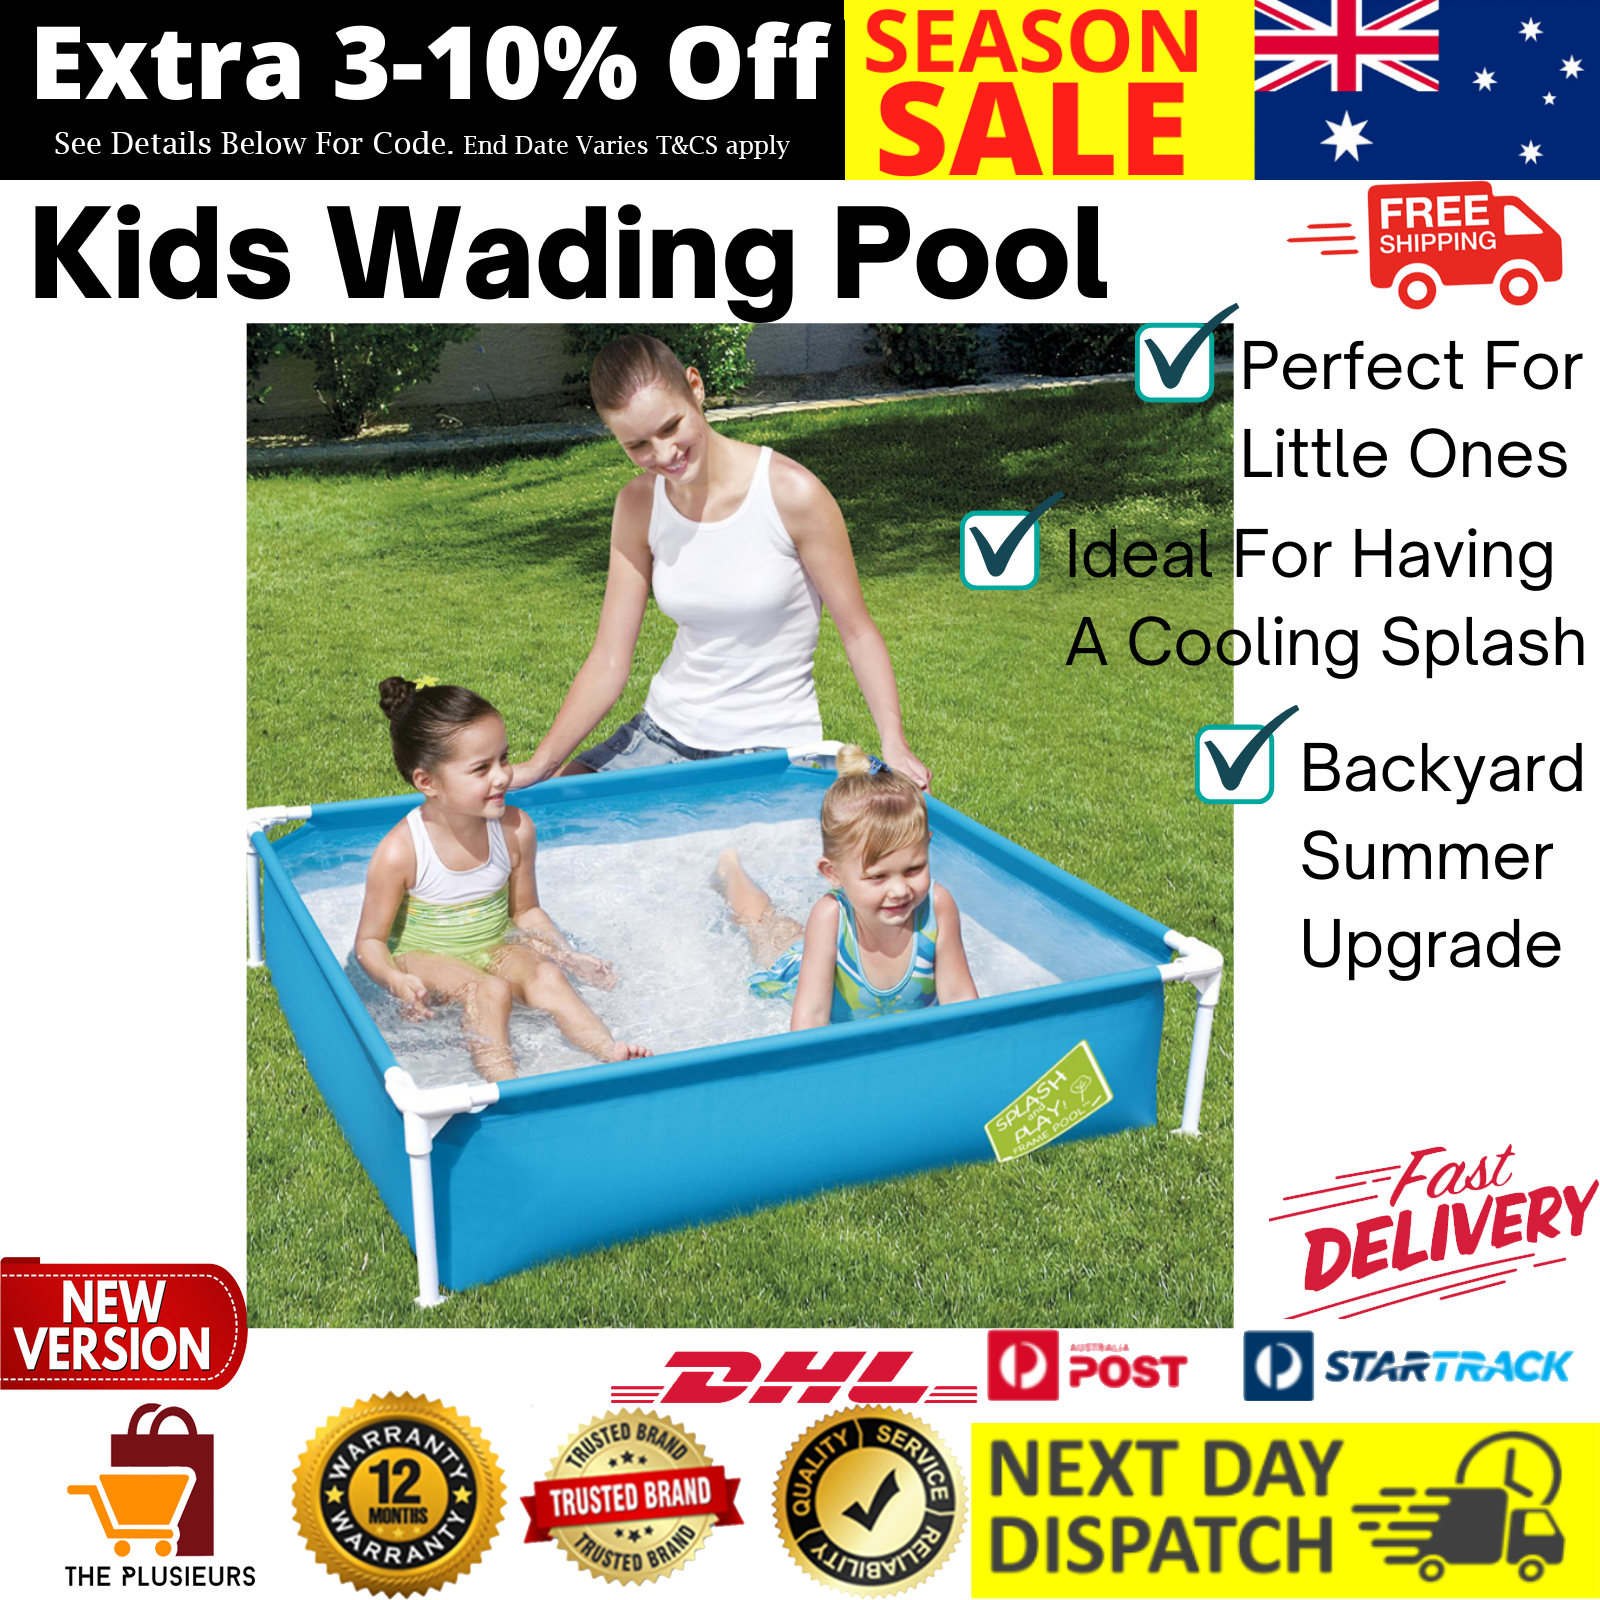 Kids Wading Pool